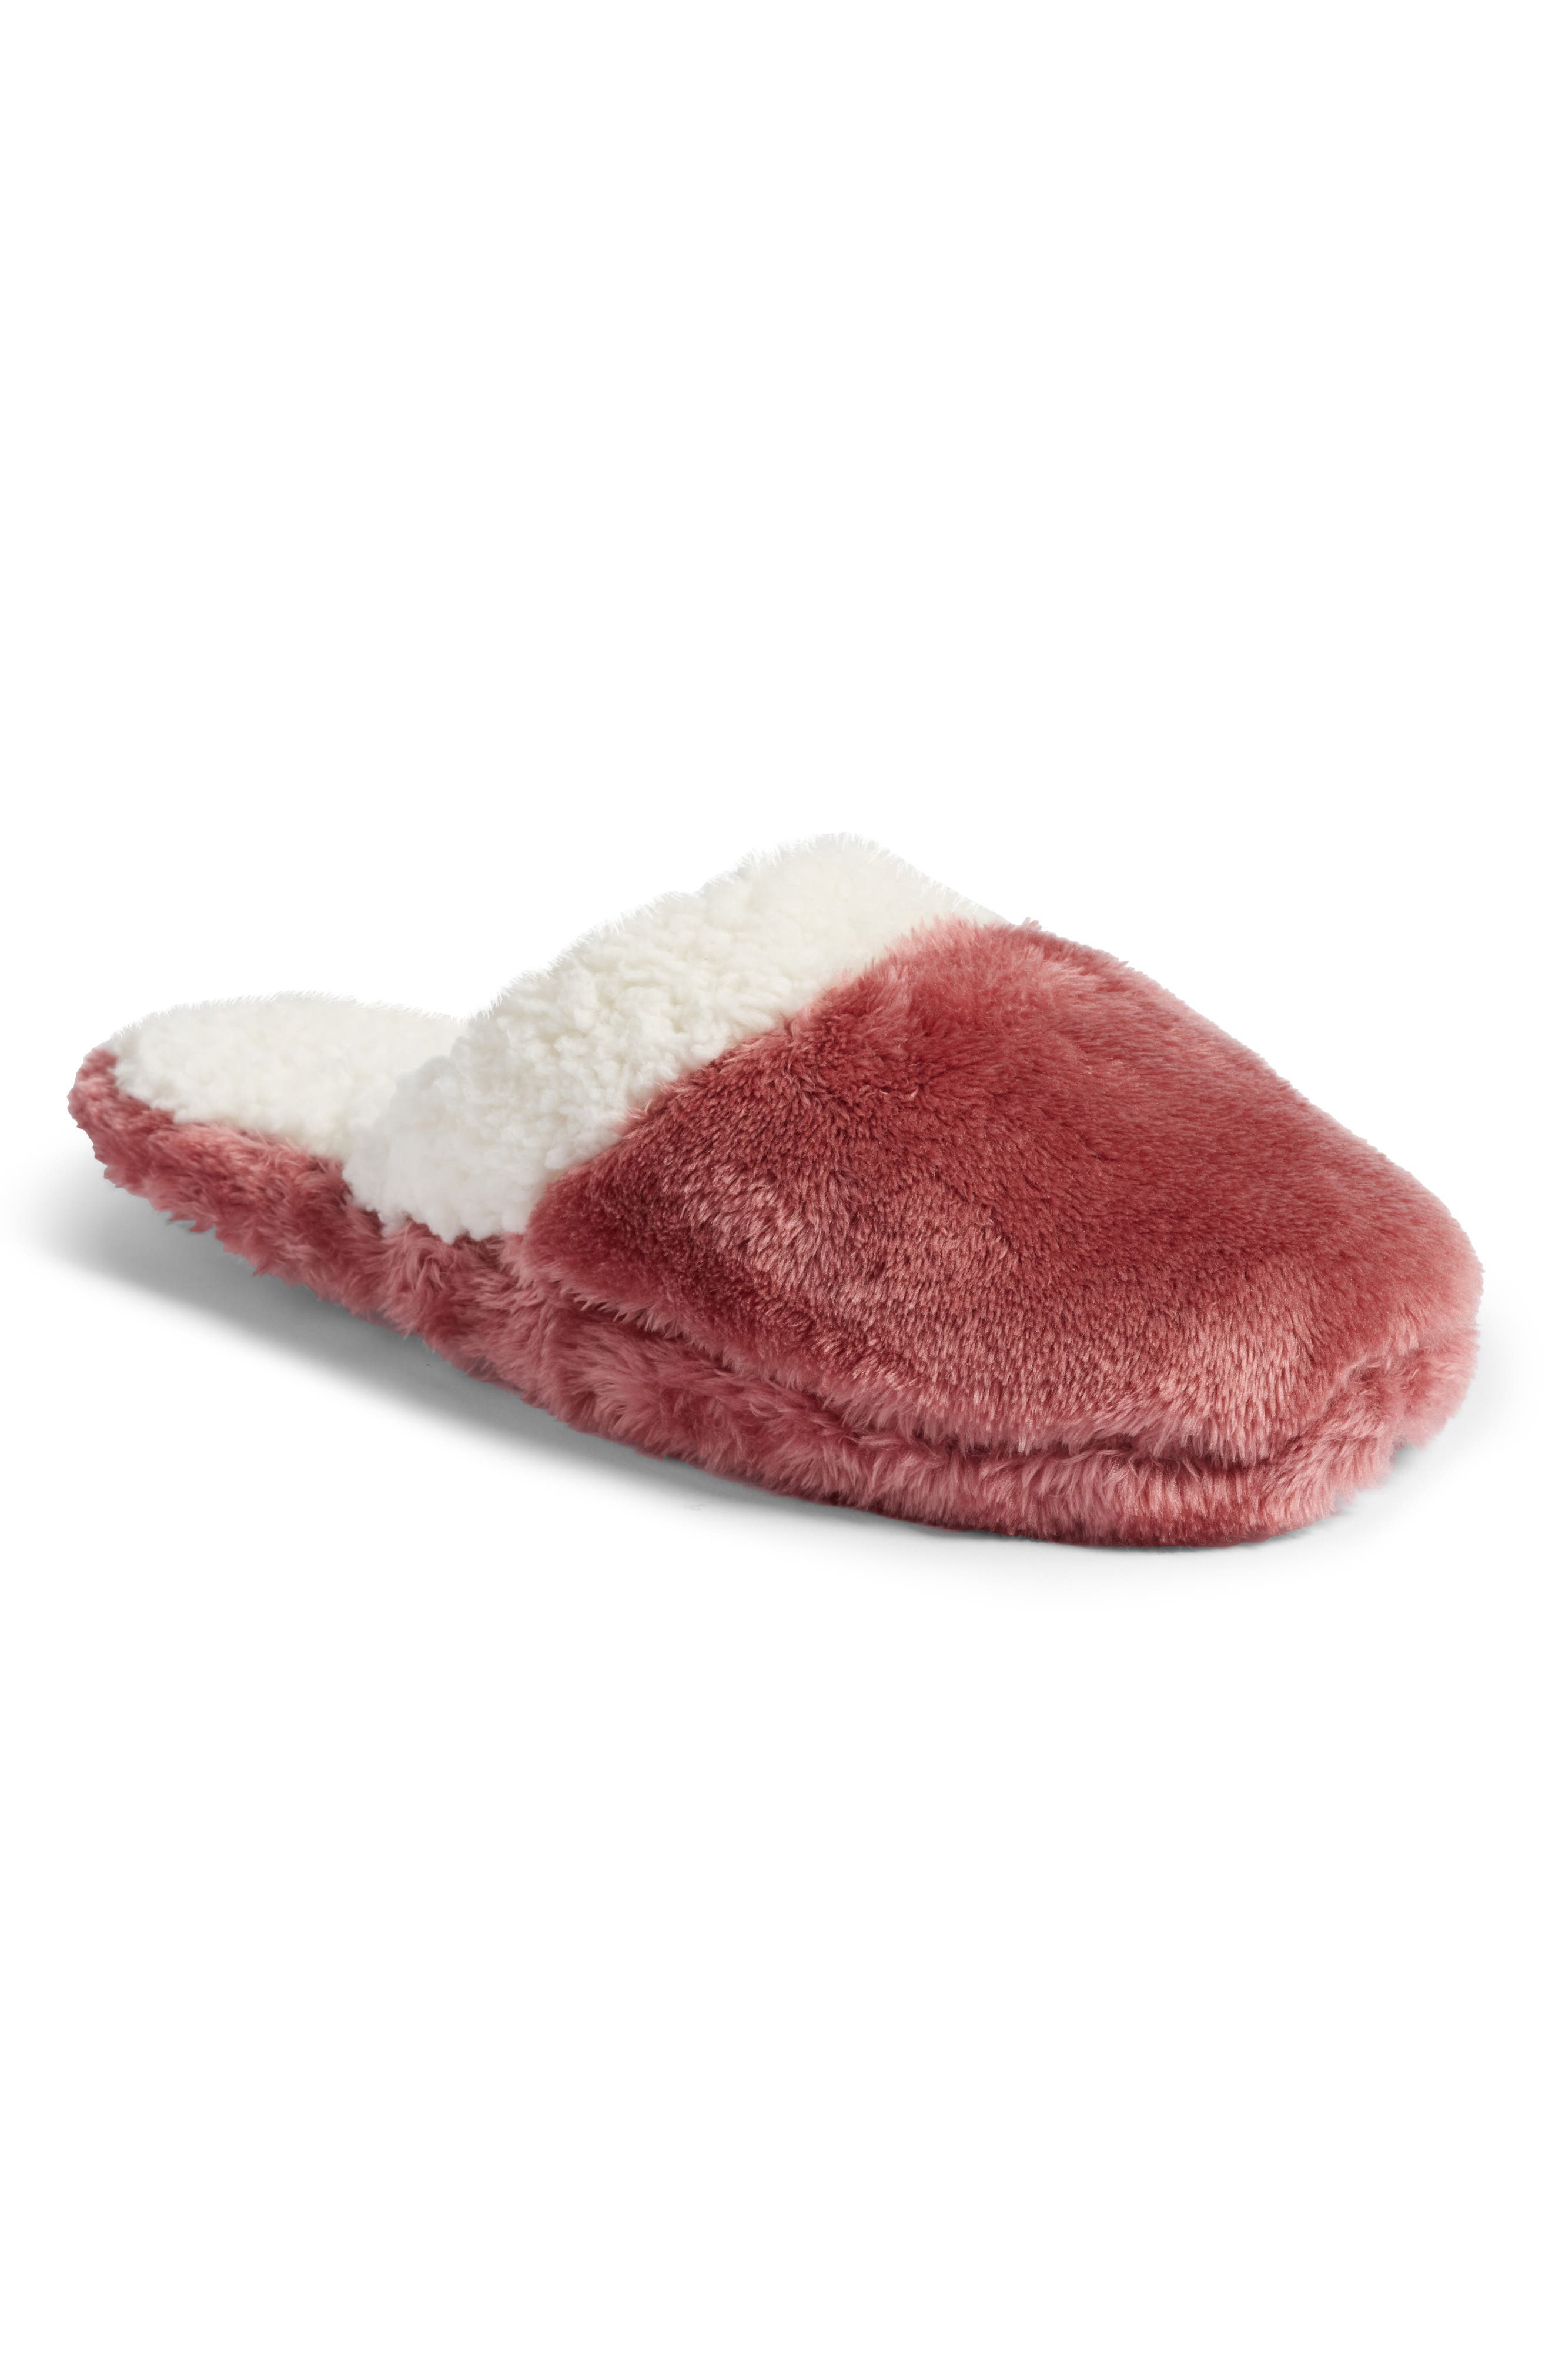 nordstrom fluffy slippers